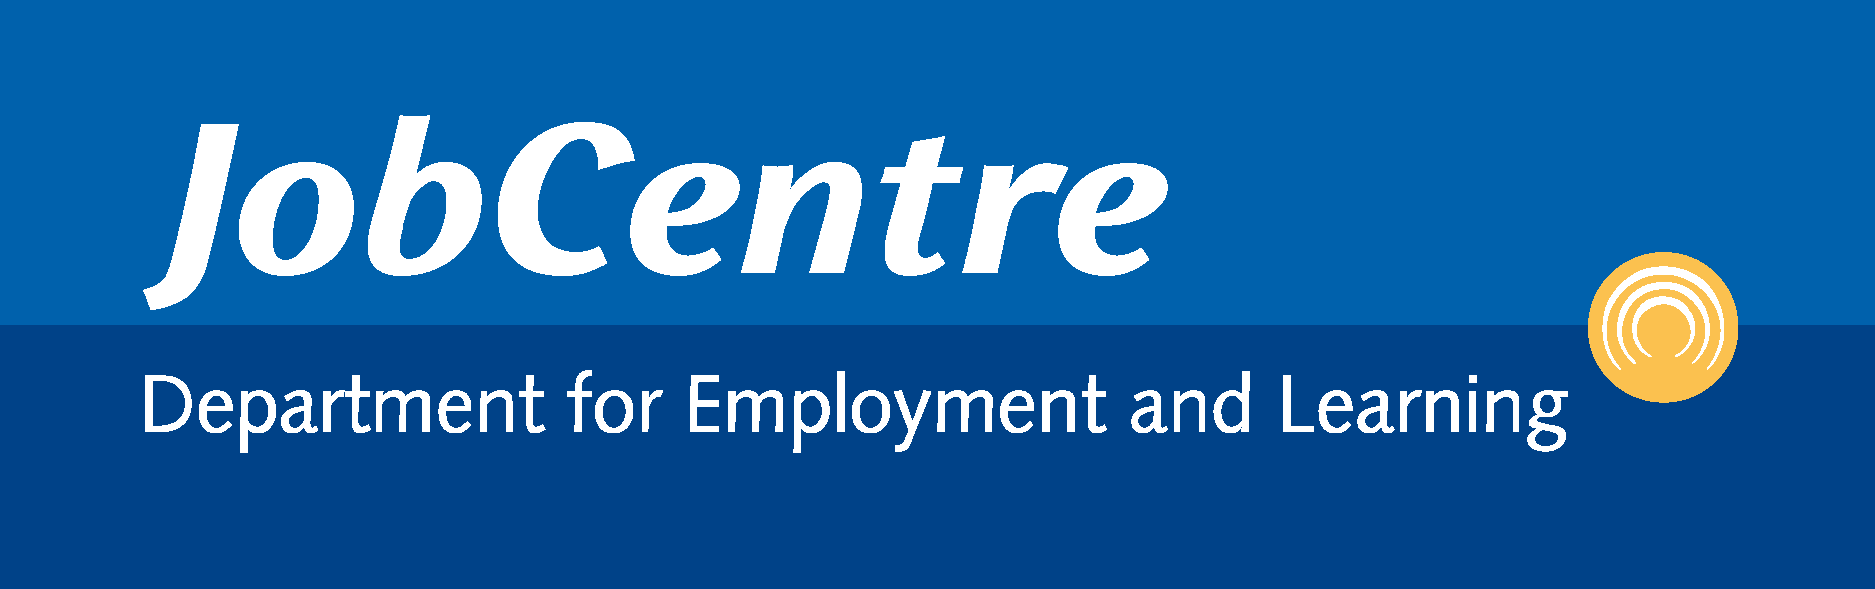 Job Centre Logo Vector